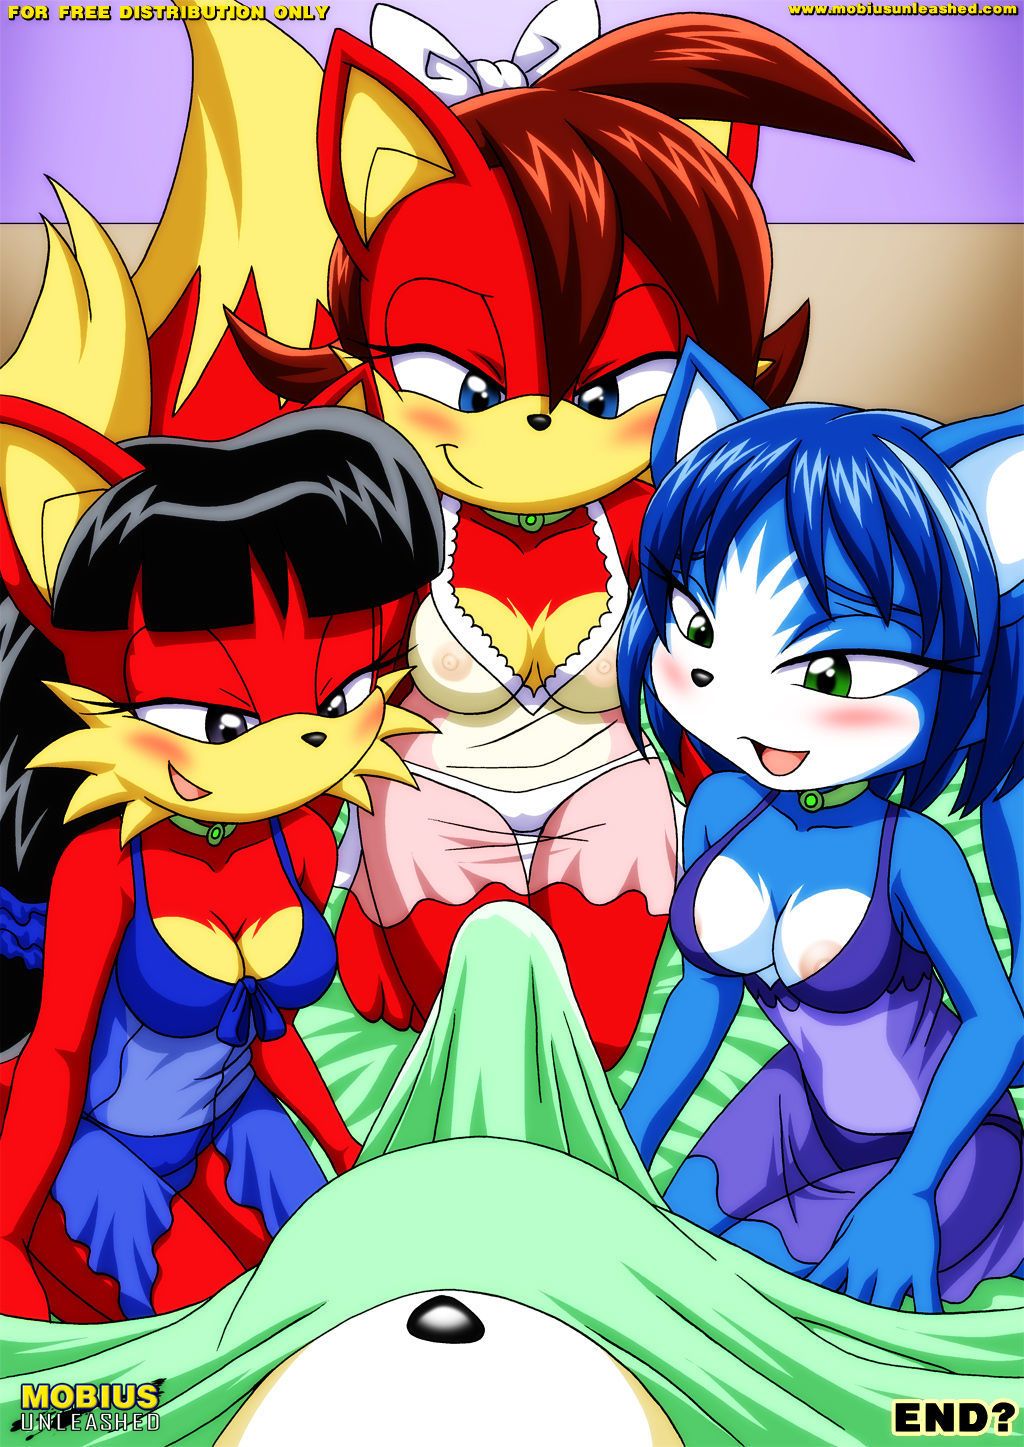 Palcomix FoXXXes (Sonic the Hedgehog- Star Fox) - part 2